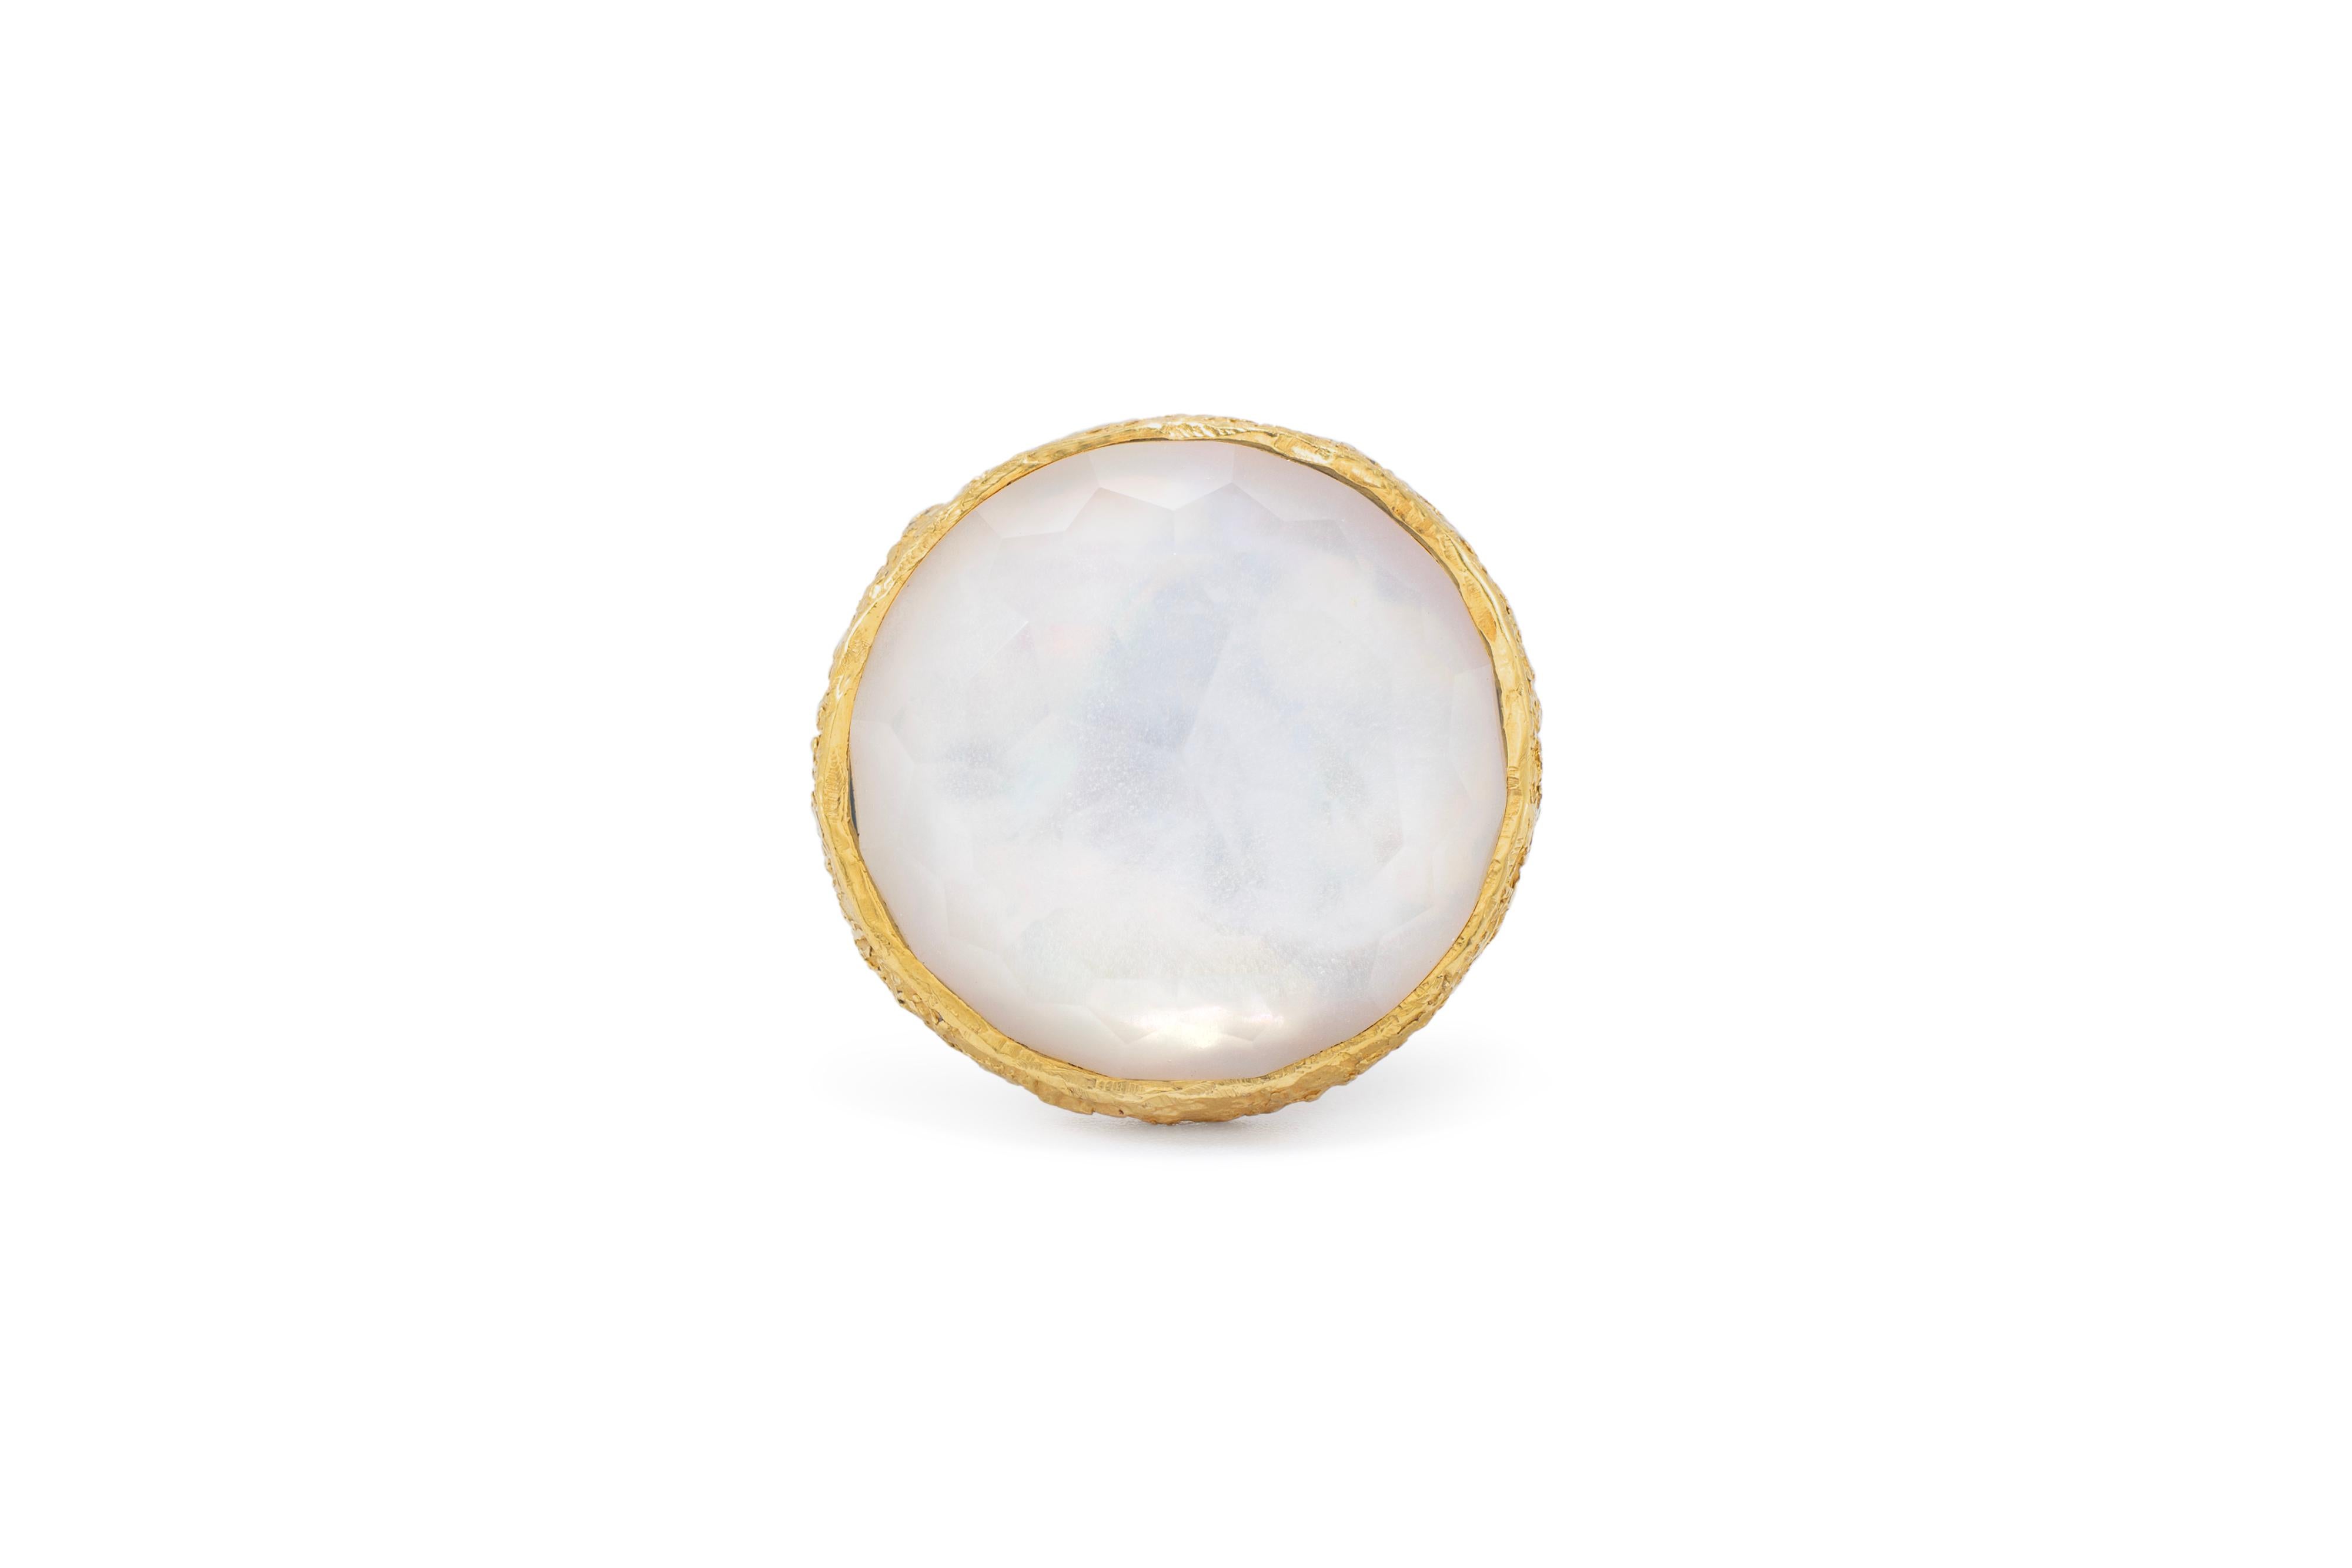 Angelischer Perlen- und Kristall-Cocktailring aus 22k Gold, von Tagili